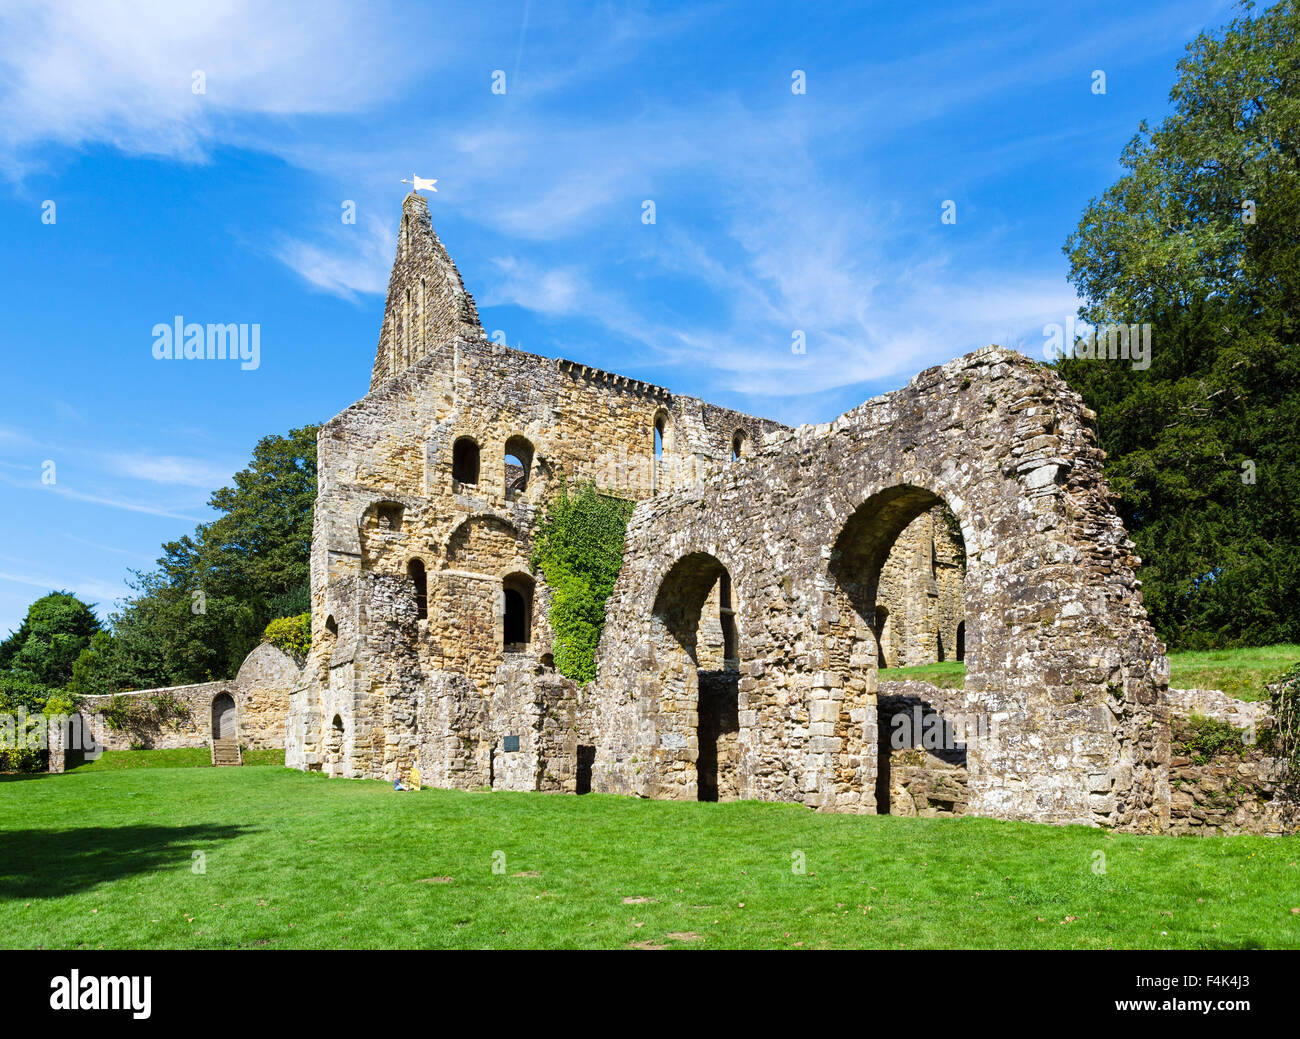 Hinteren Teil der Ruinen des Bereichs Schlafsaal in Battle Abbey, 1066 Schlacht von Hastings Abtei Schlachtfeld, East Sussex England, UK Stockfoto